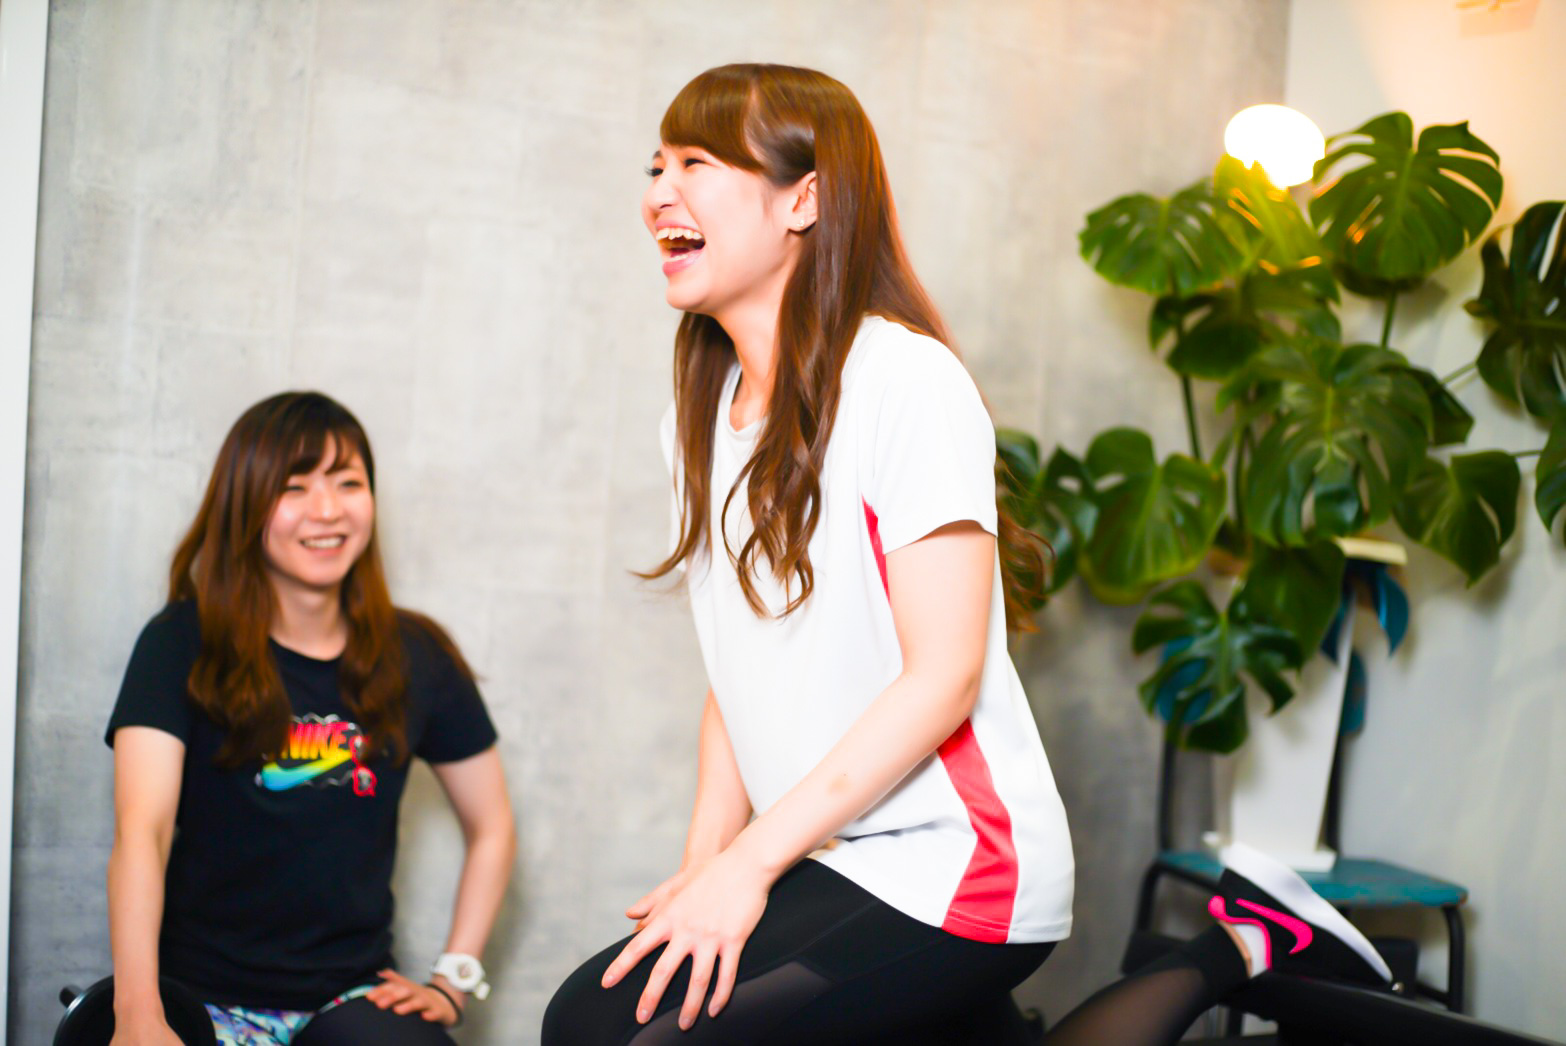 熊本市南区の女性専用ダイエット・パーソナルトレーニングジム | Chase